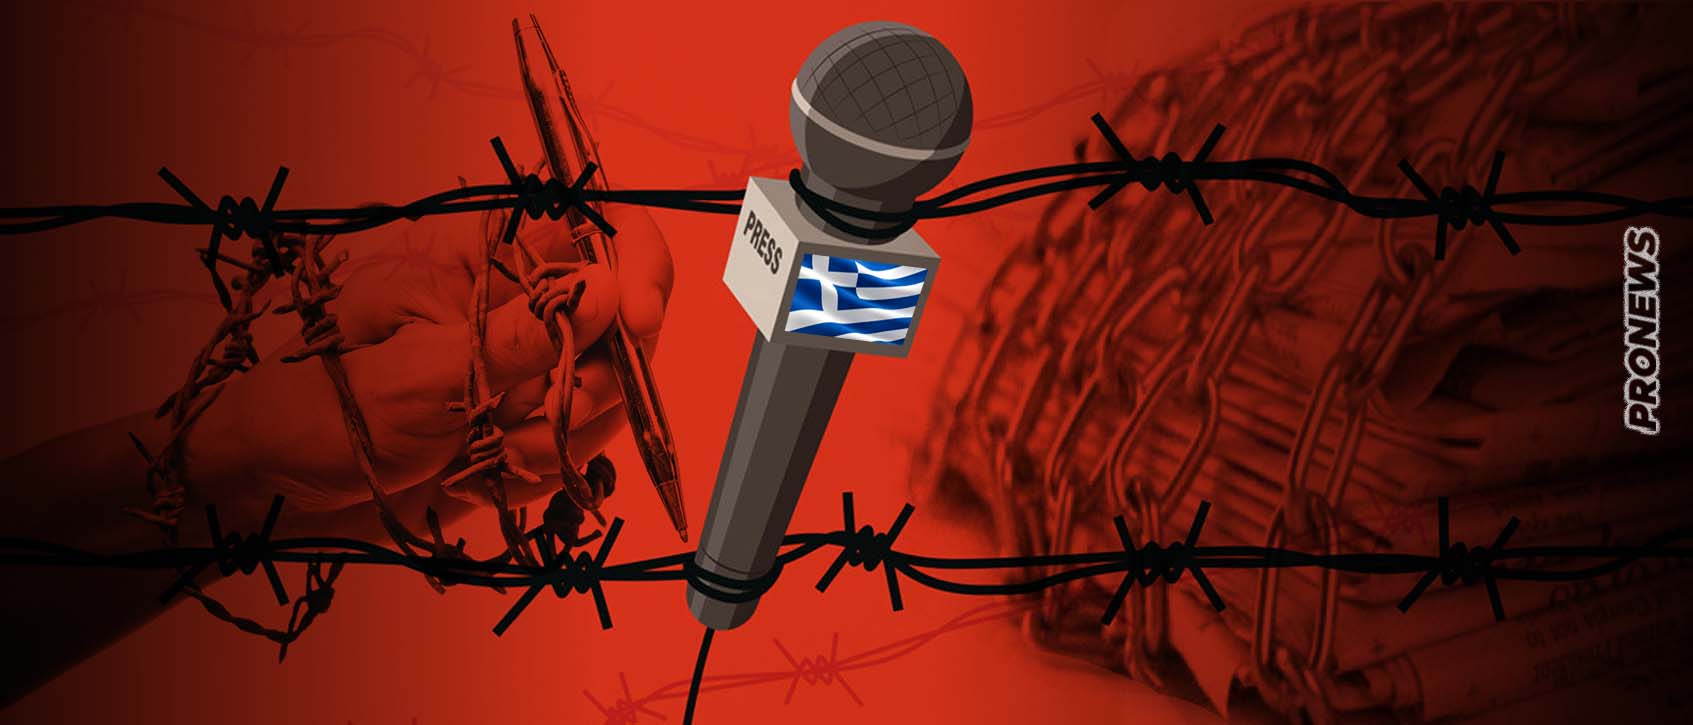 Έκθεση-κόλαφος για την «Ελευθερία του Τύπου» στην Ελλάδα: Η χώρα βρίσκεται στην 107η θέση